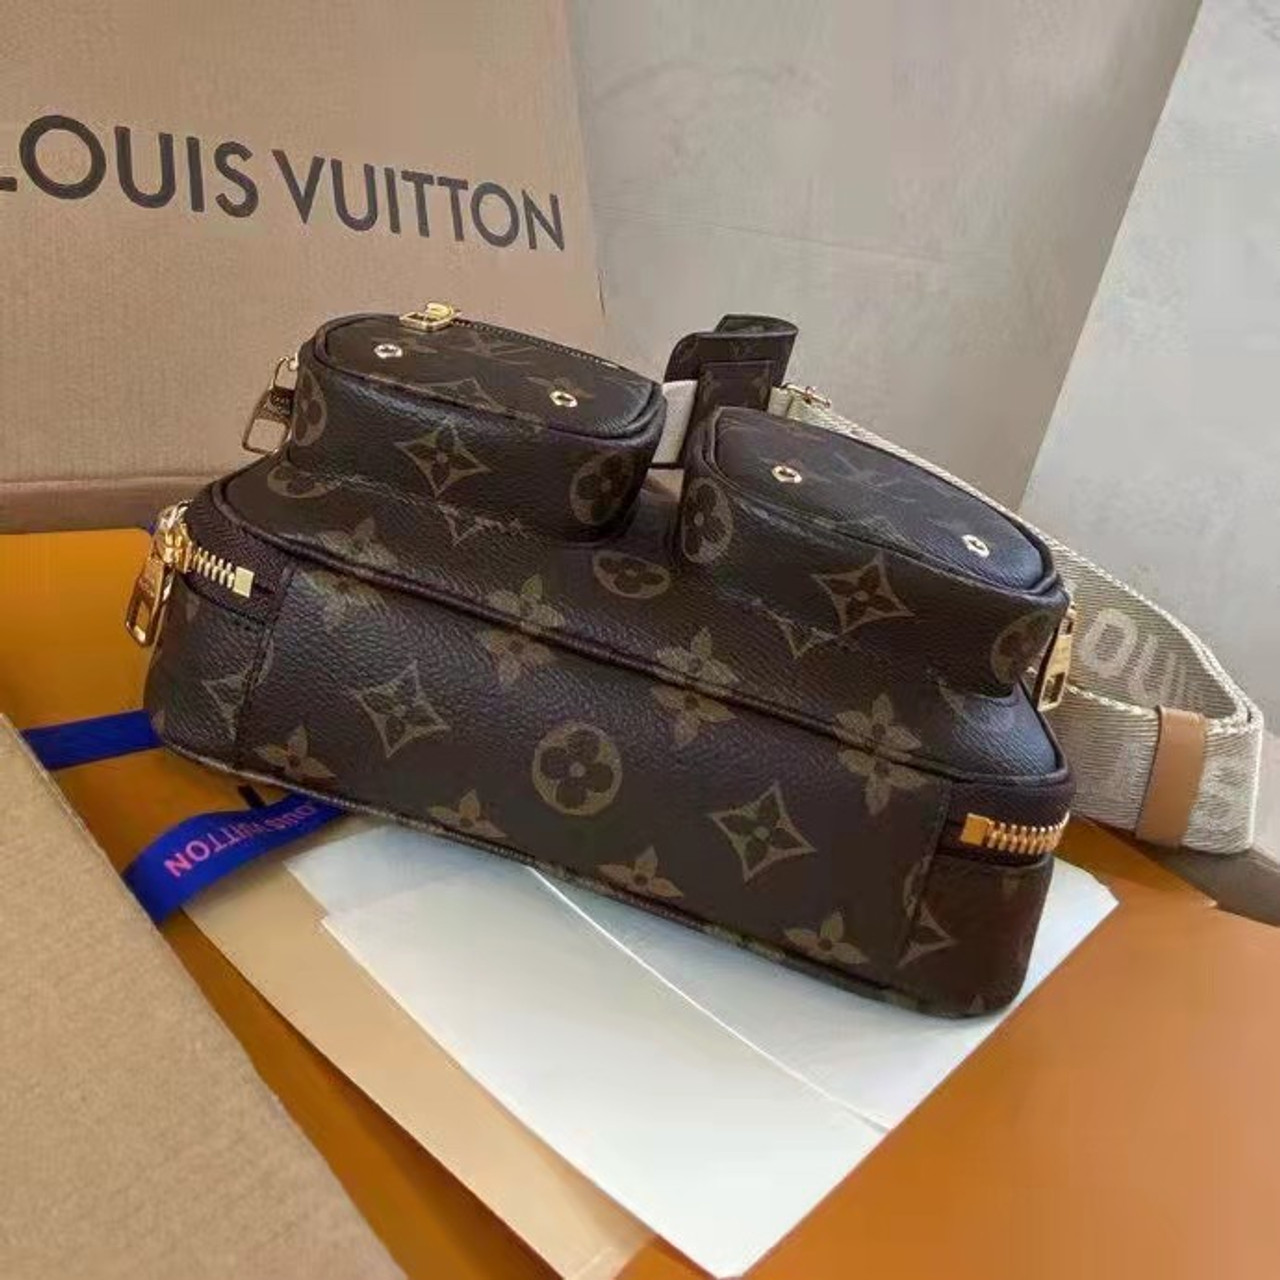 Masque Louis Vuitton Dior stock - يوميات ka7lanzy +18